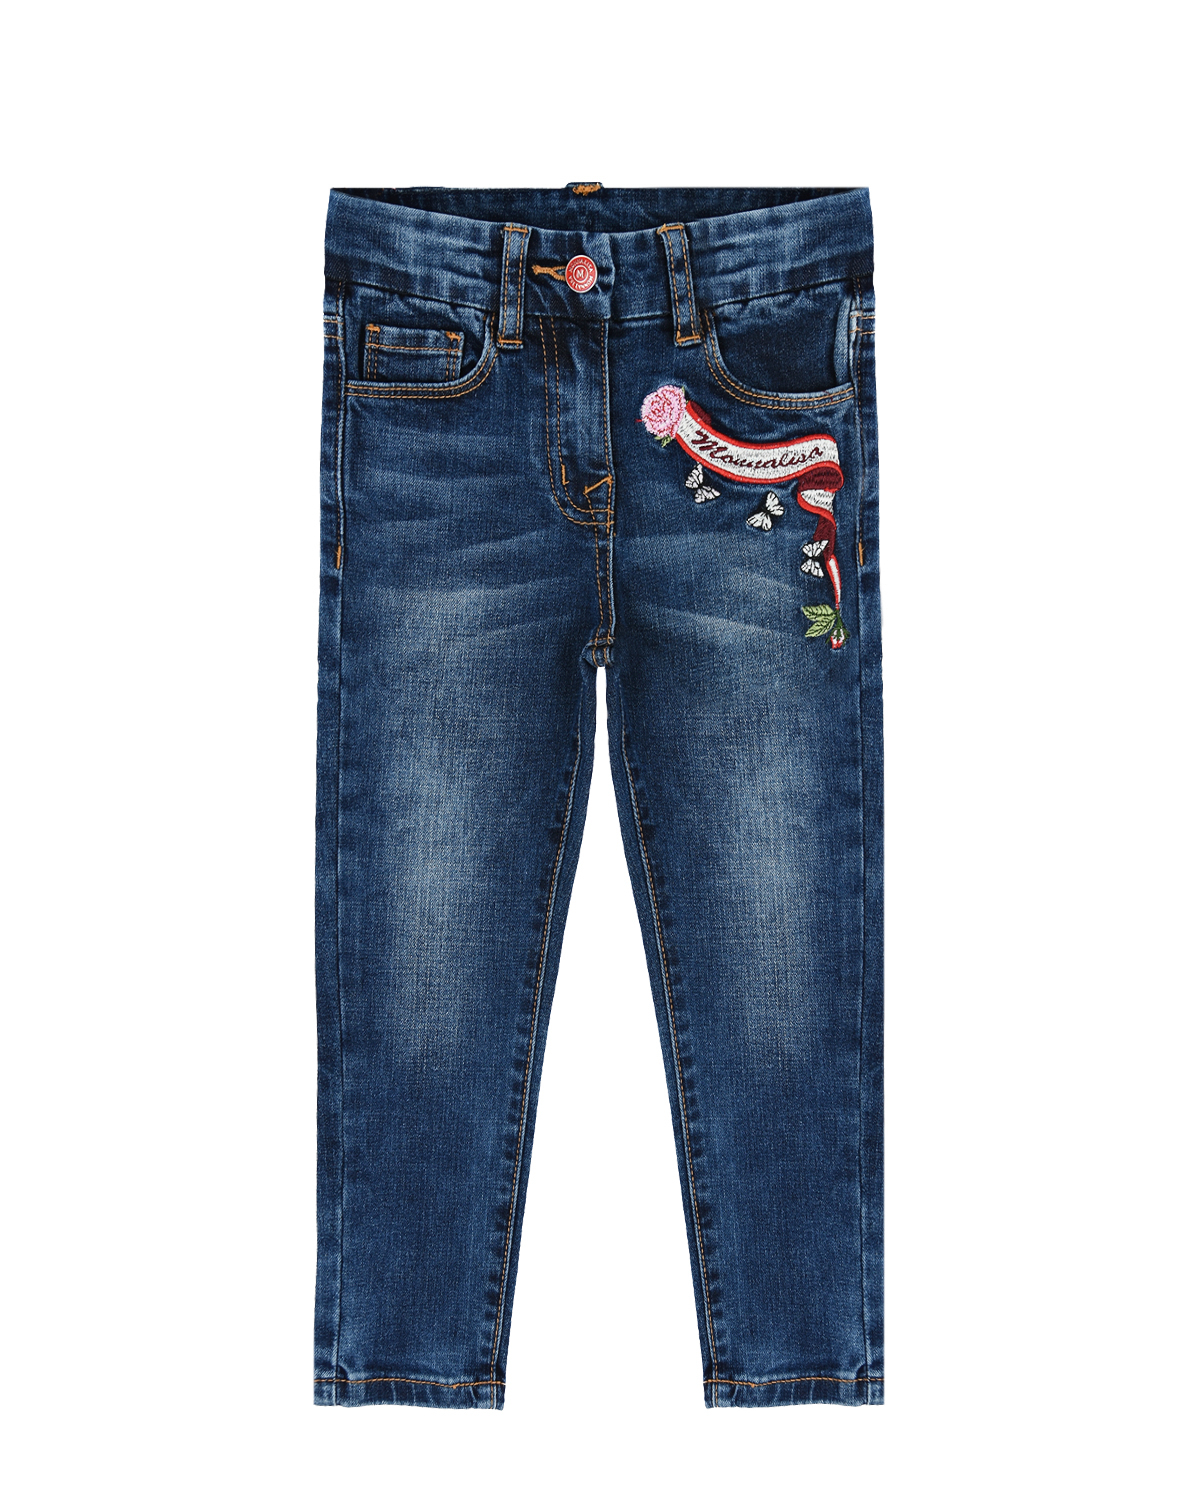 Синие джинсы с вышивкой Monnalisa детские